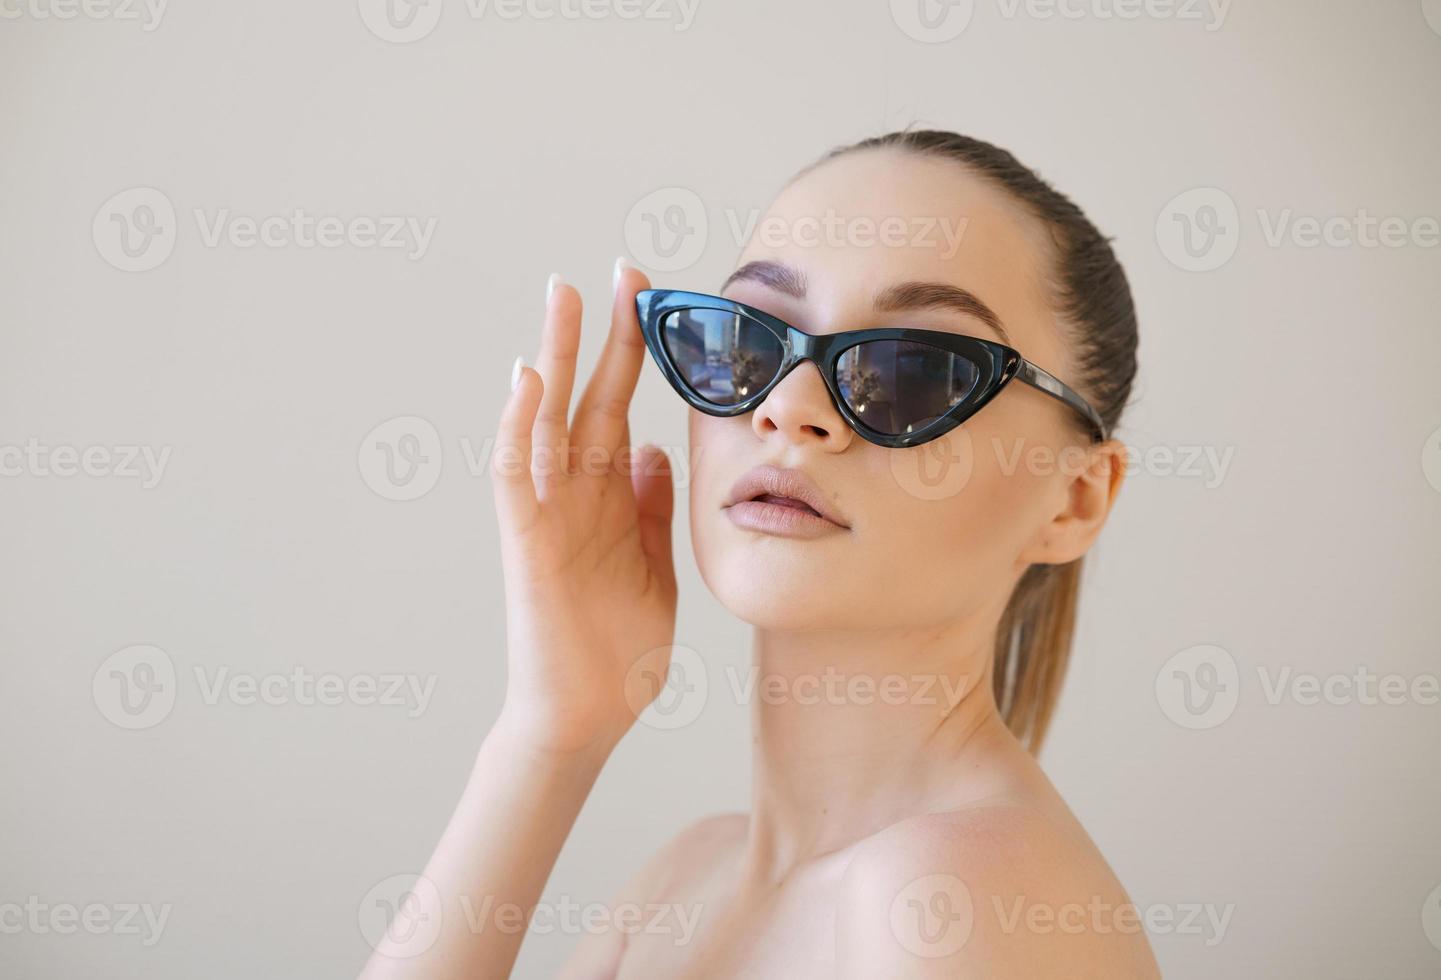 schoonheid fashion model meisje met bruin haar dragen stijlvolle zonnebril raakt foto